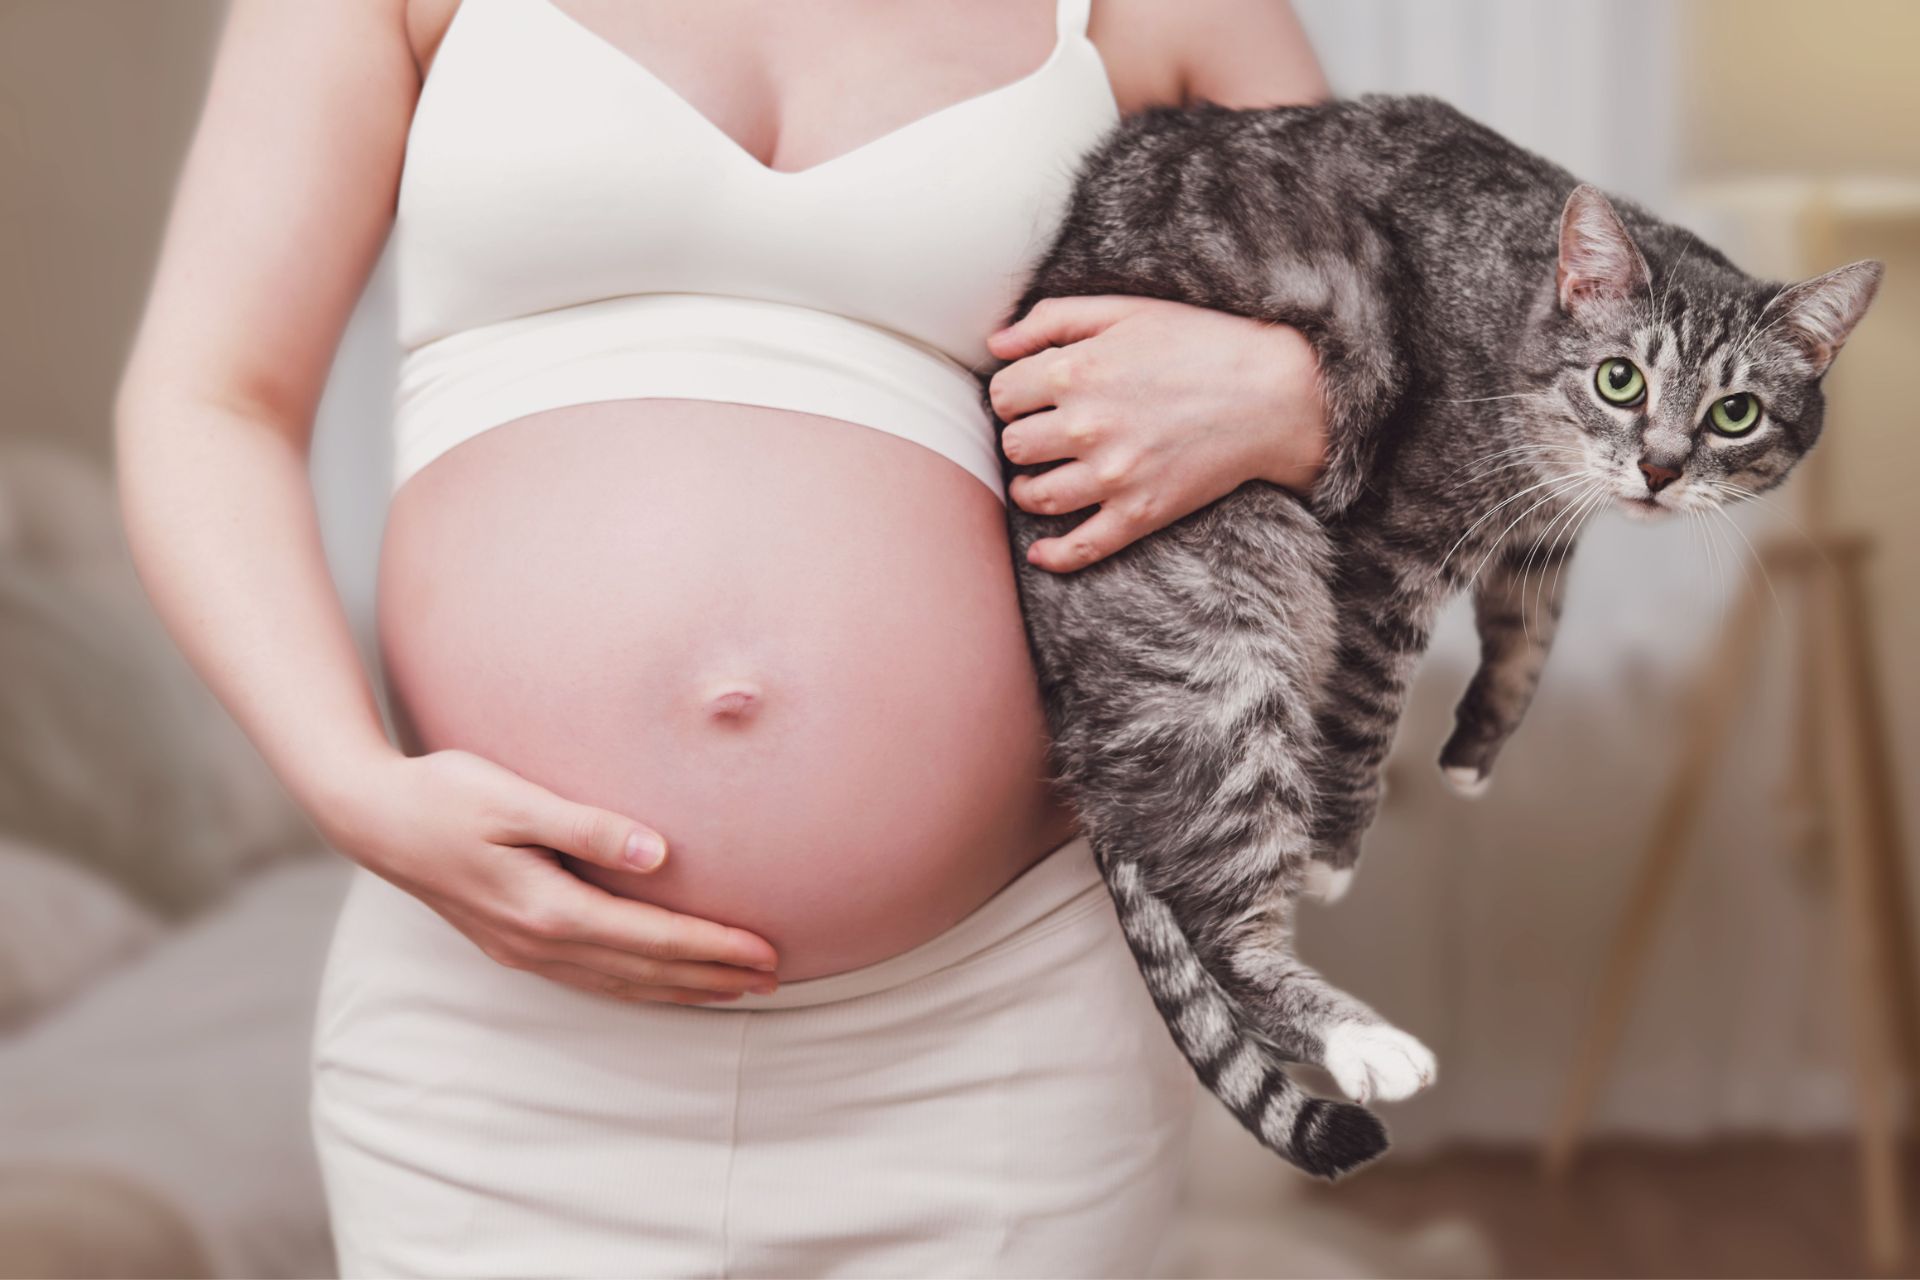 ciąża a toksoplazmoza - fakty i mity